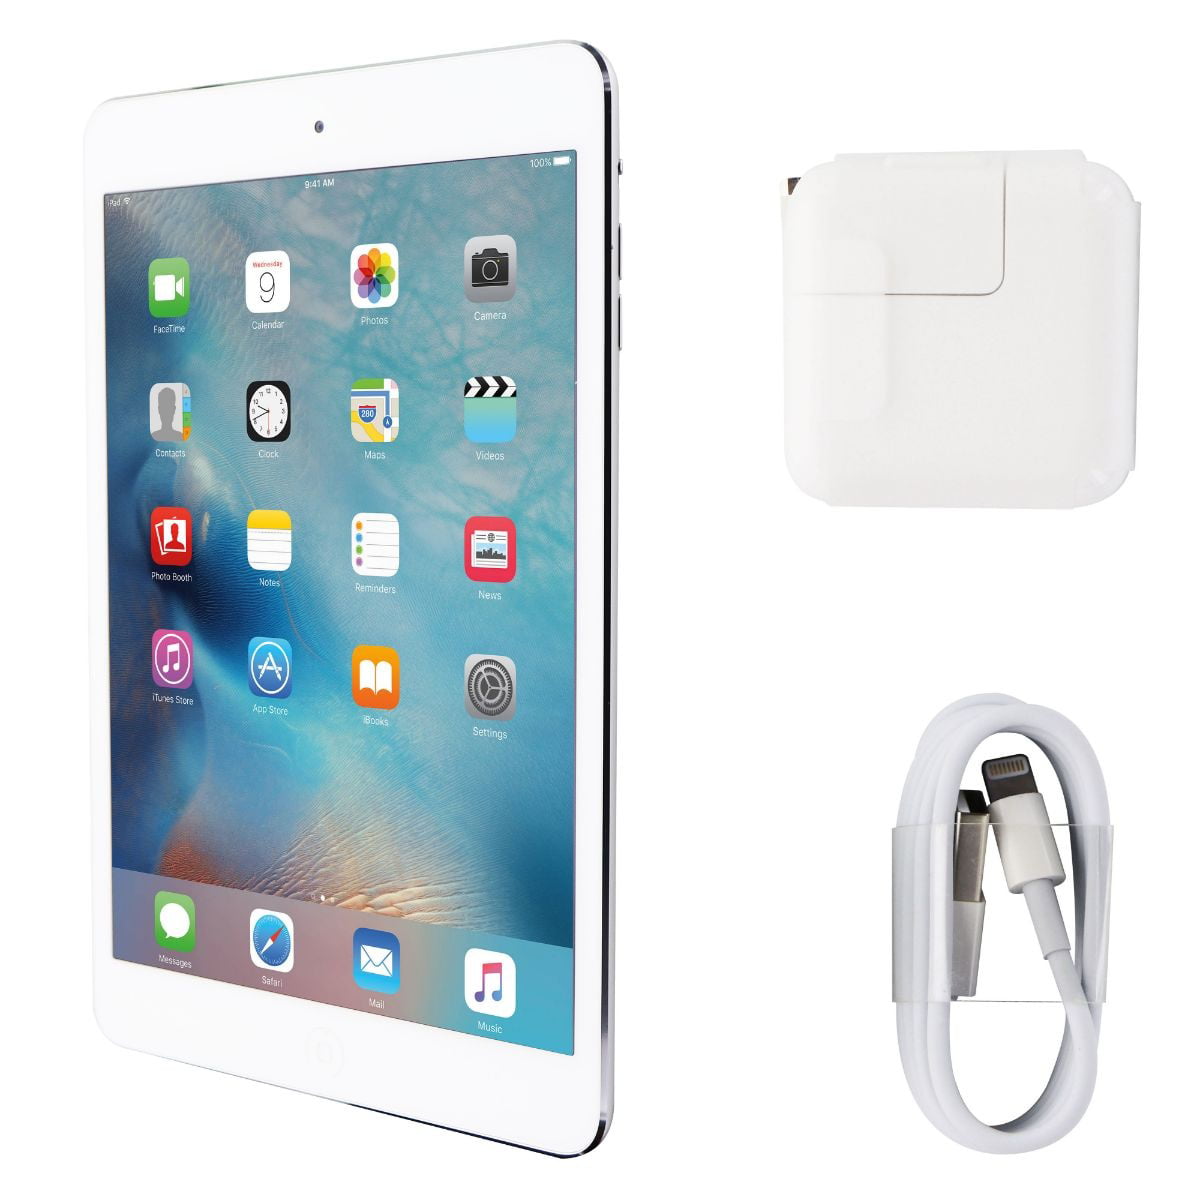 Apple iPad mini 2 (Wi-Fi Only) A1489 - 16GB/Silver (ME279LL/A